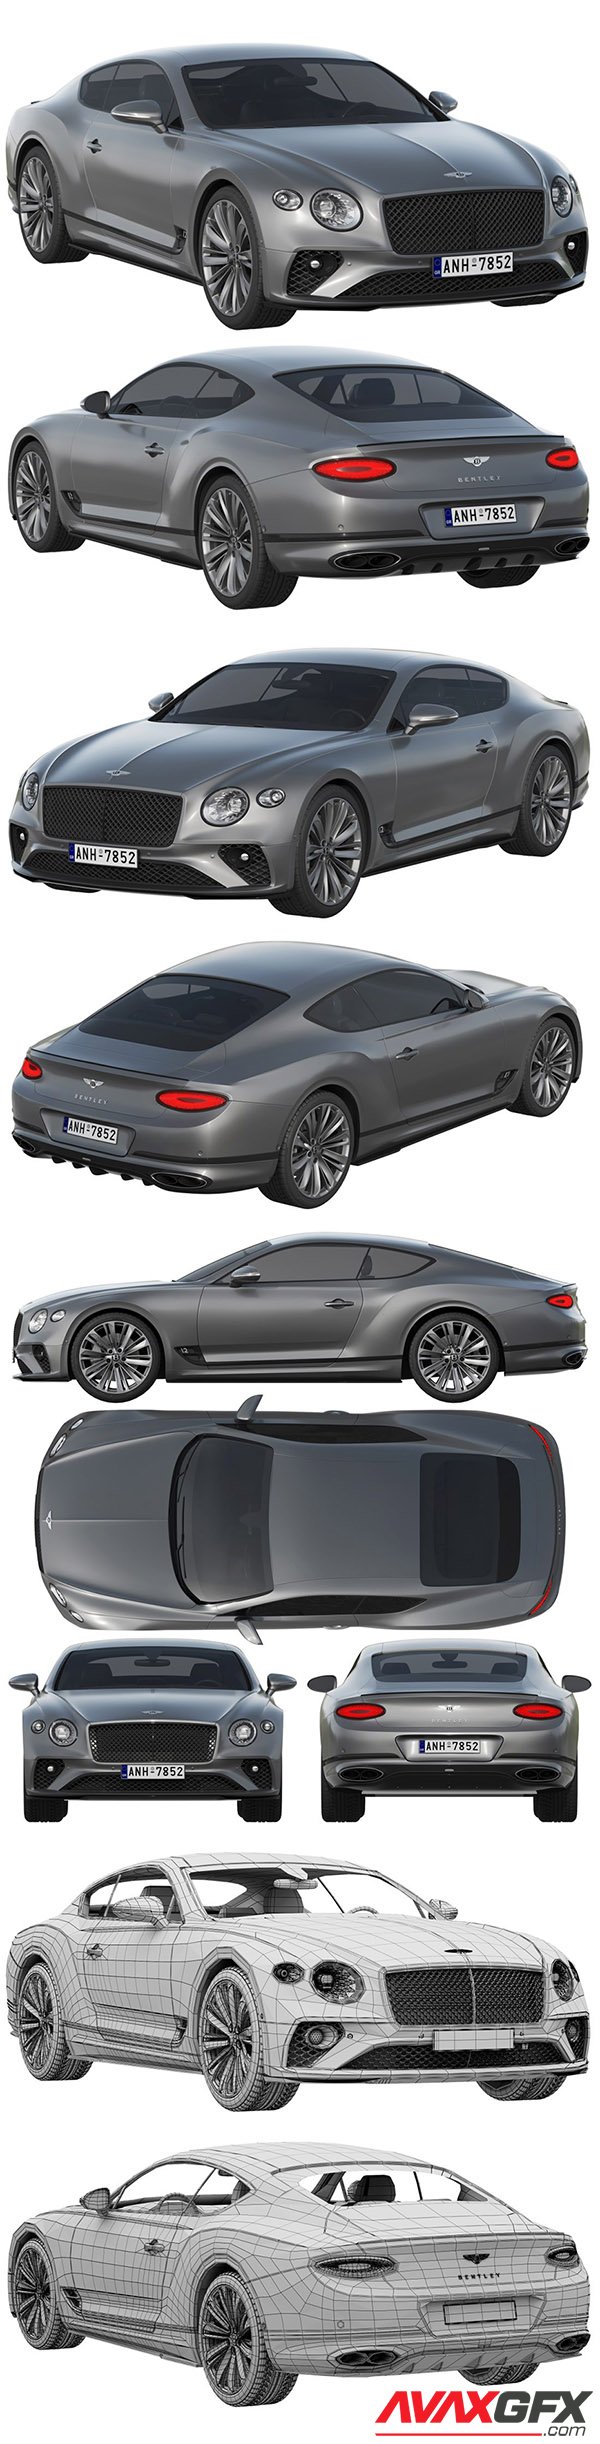 Bentley Continental GT Speed 3D Model